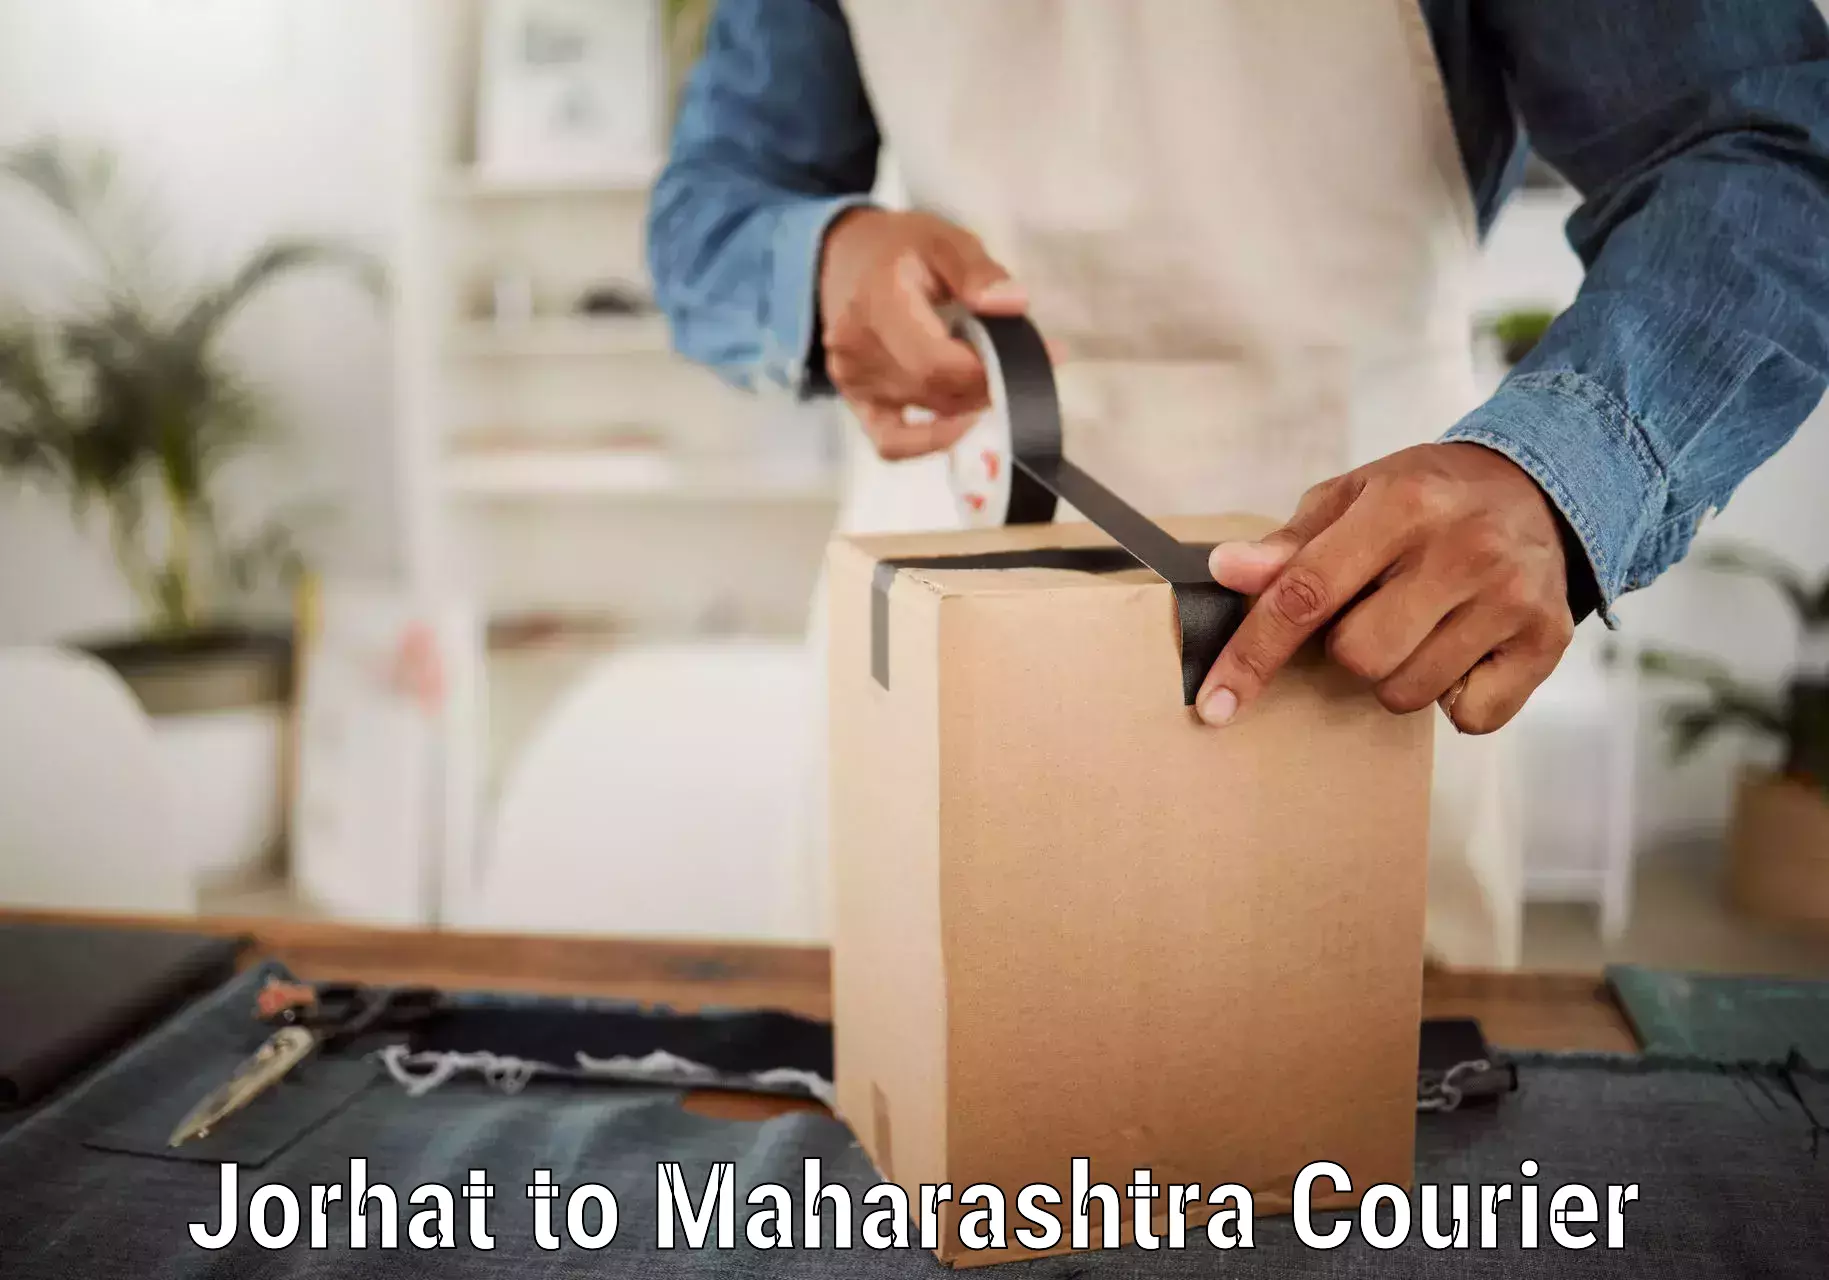 Efficient parcel service Jorhat to Mahad